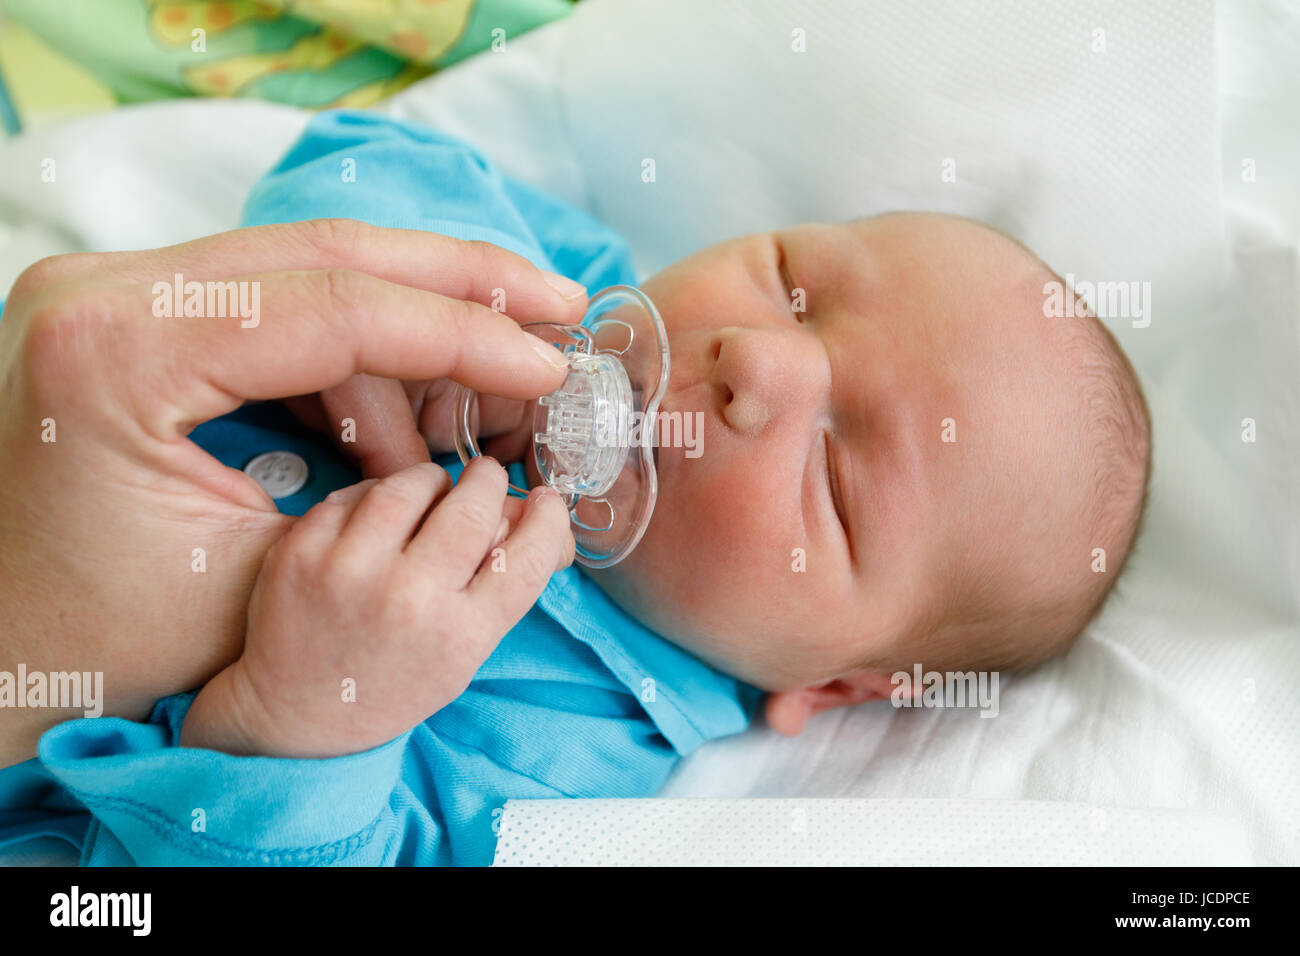 Neugeborenes Kind im Krankenhaus, die ersten Stunden des neuen Lebens, einen Tag nach der Geburt Stockfoto